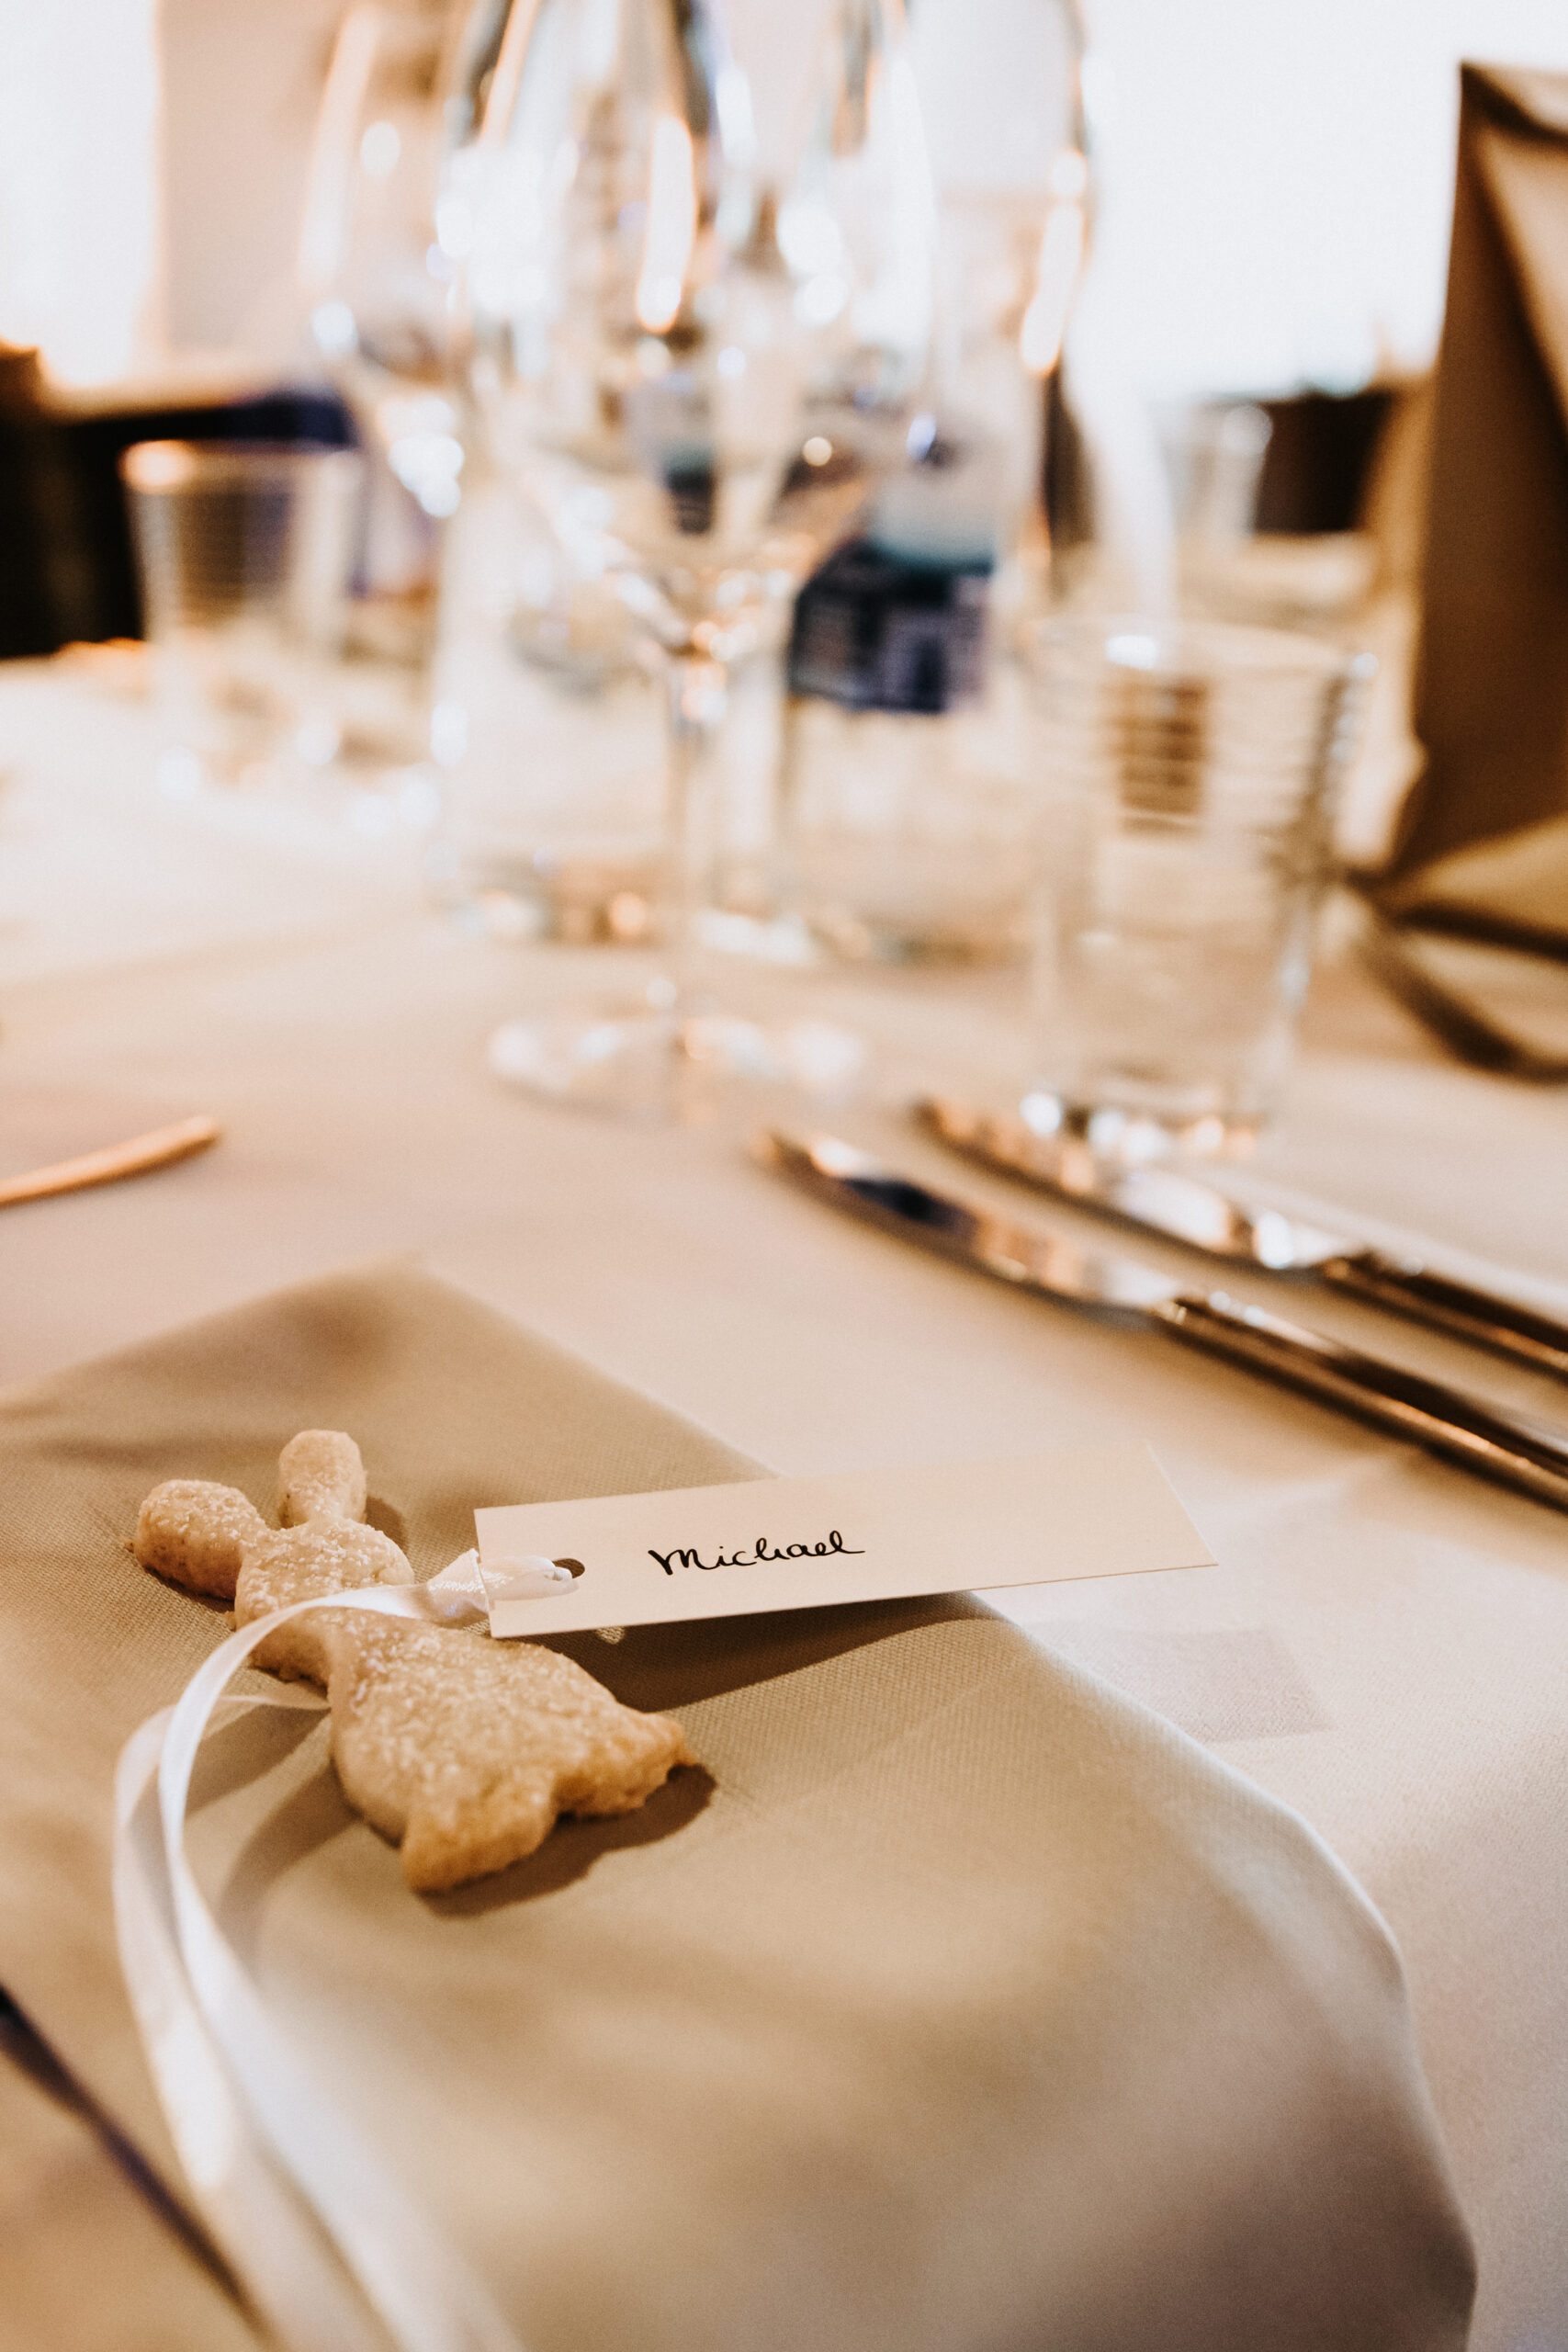 Detailaufnahme der Hochzeitsdekoration und Tischnamenkärtchen. Mit einem weißen Band an einem Kekshasen fest gemacht.